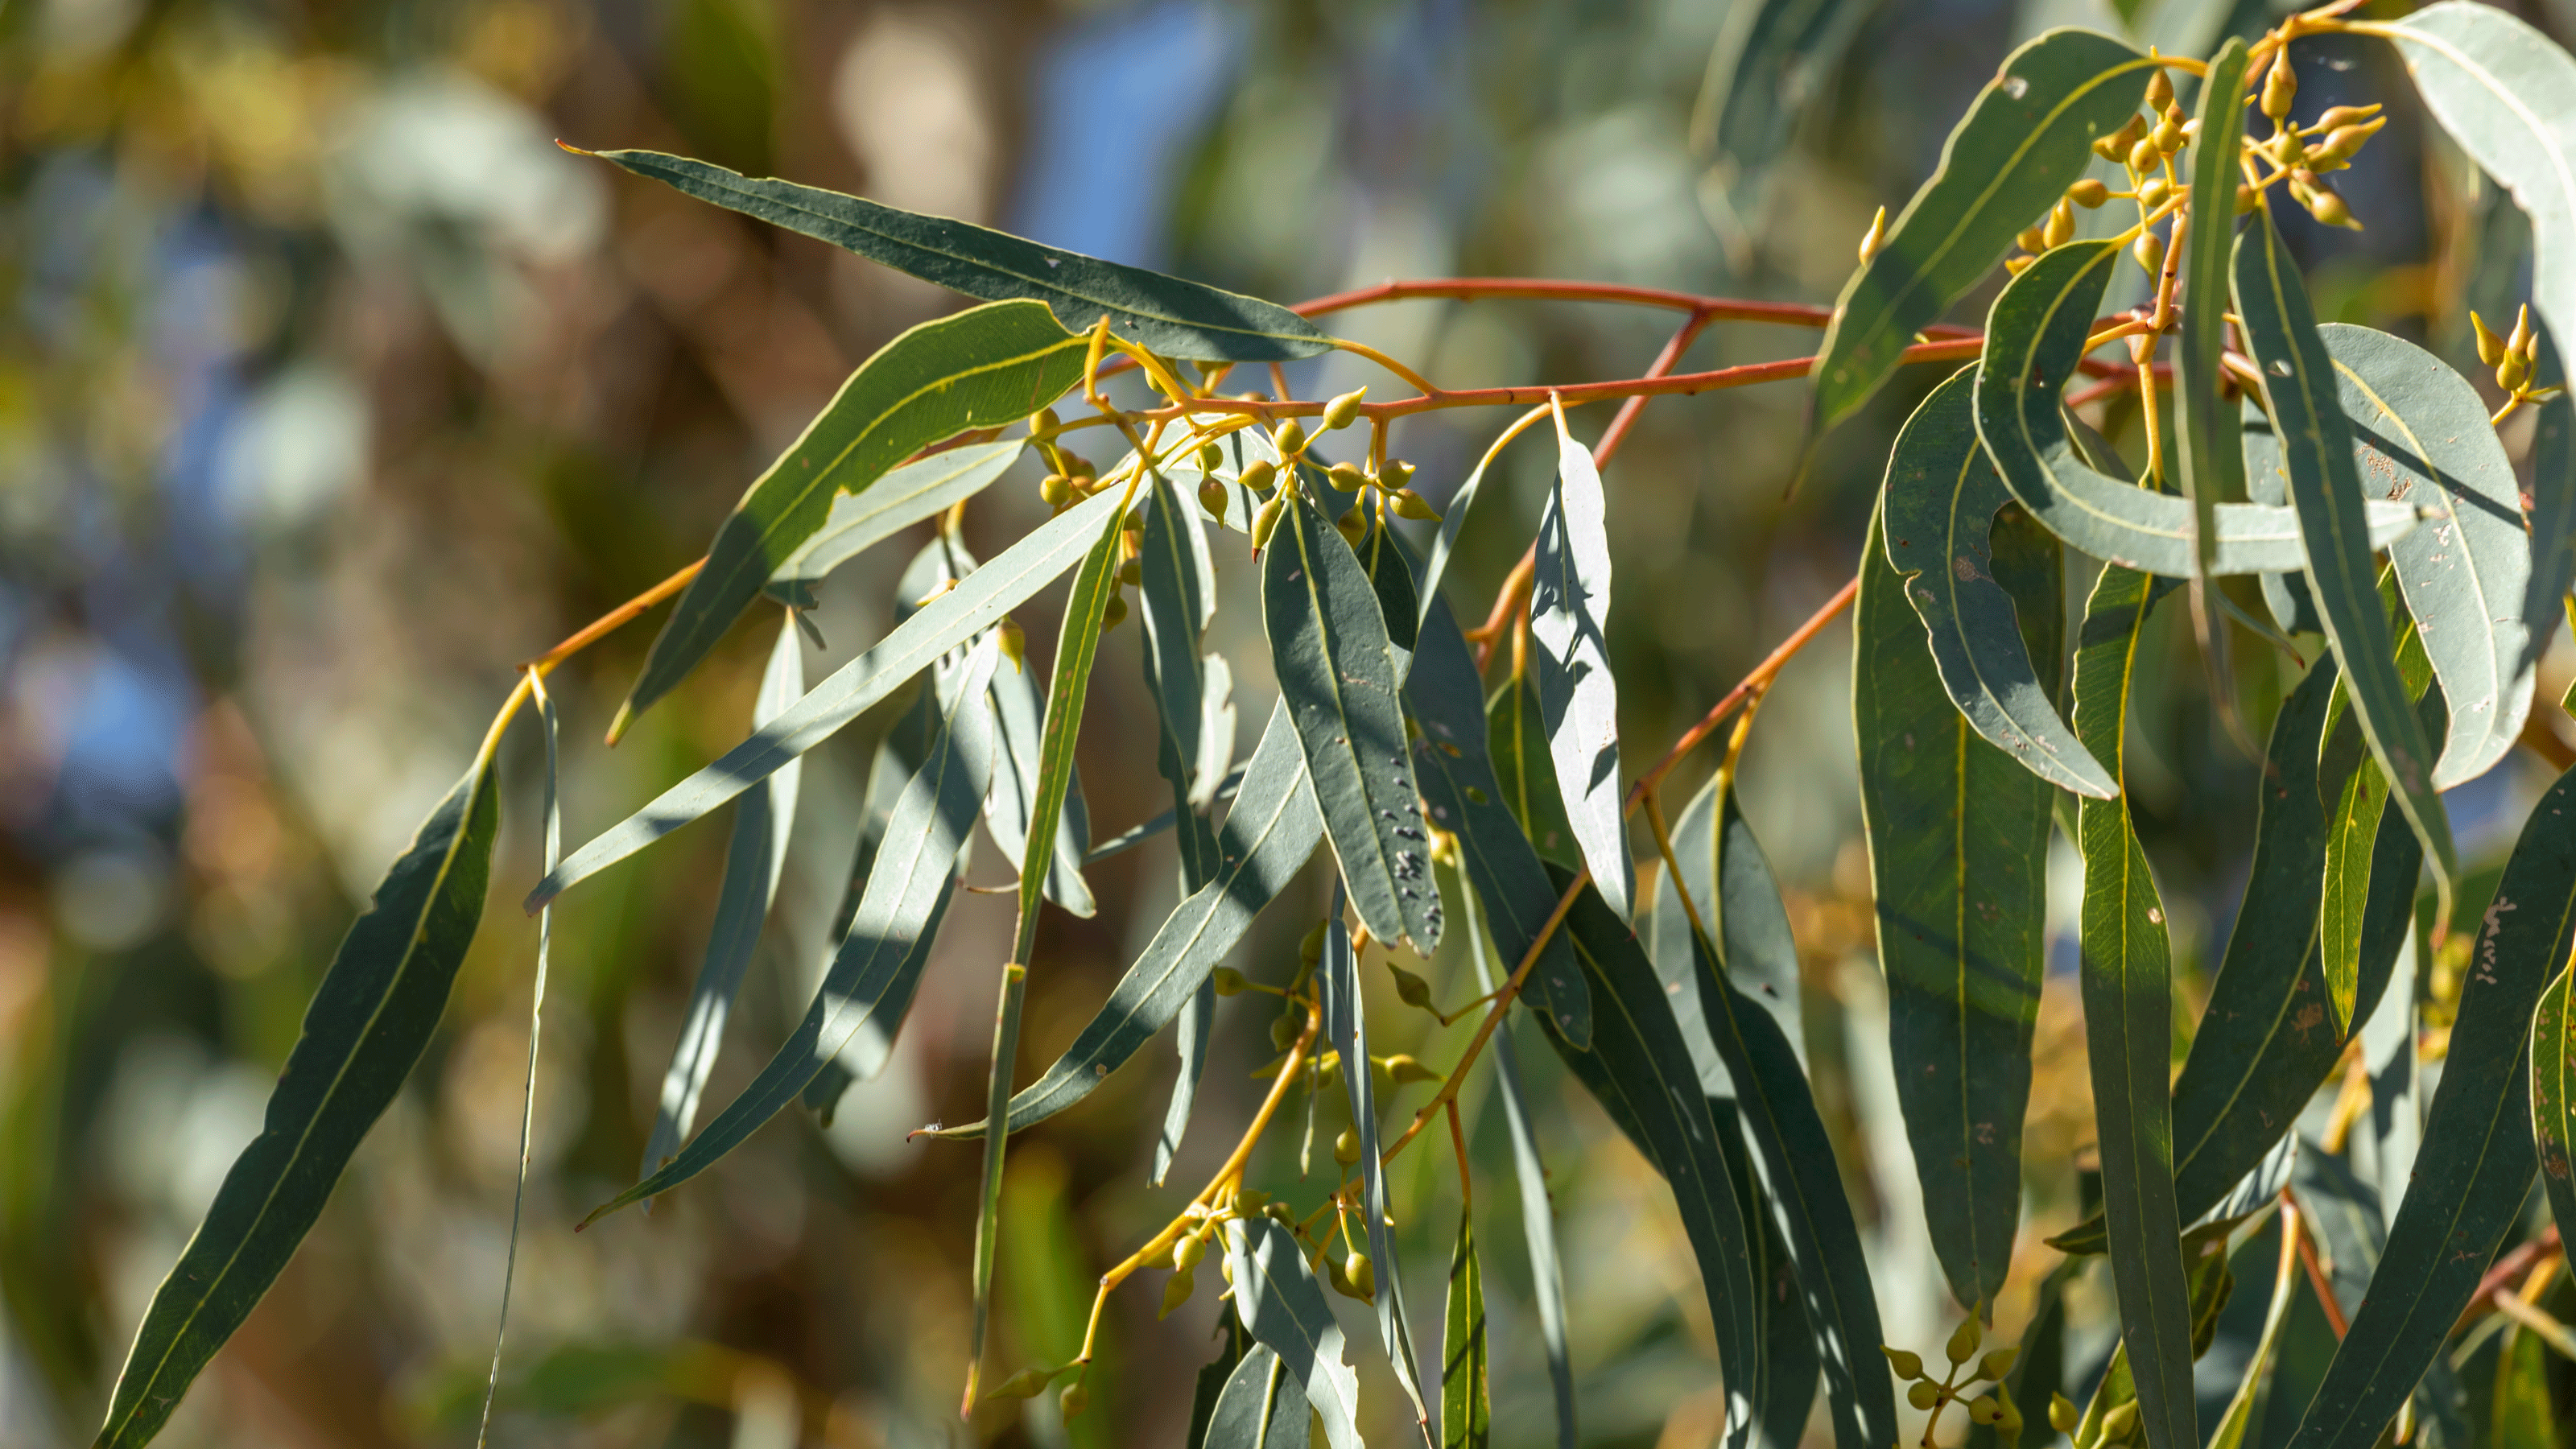 Eucalyptus in basket